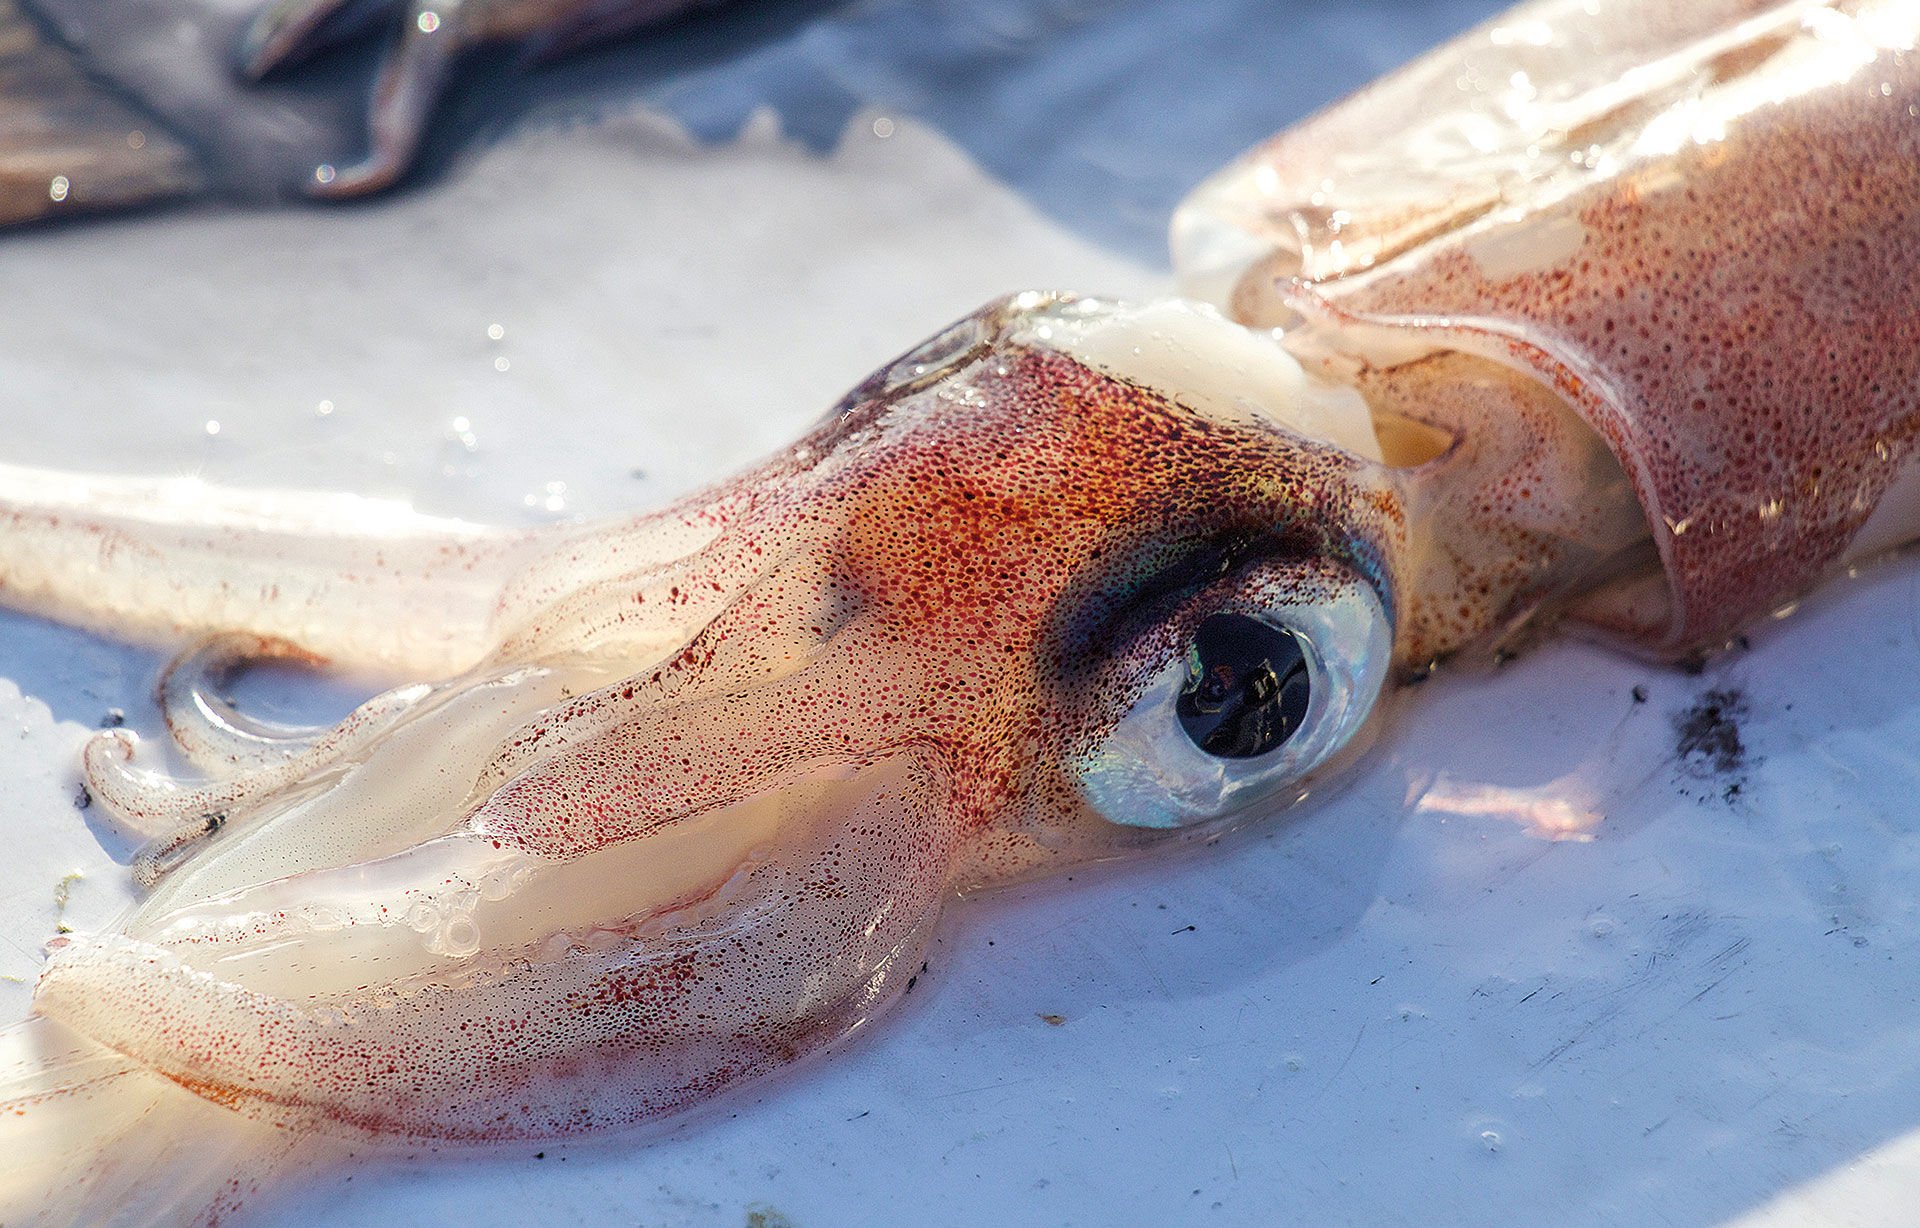  Die grossen Augen der Kalmare haben eine hohe Lichtausbeute.  